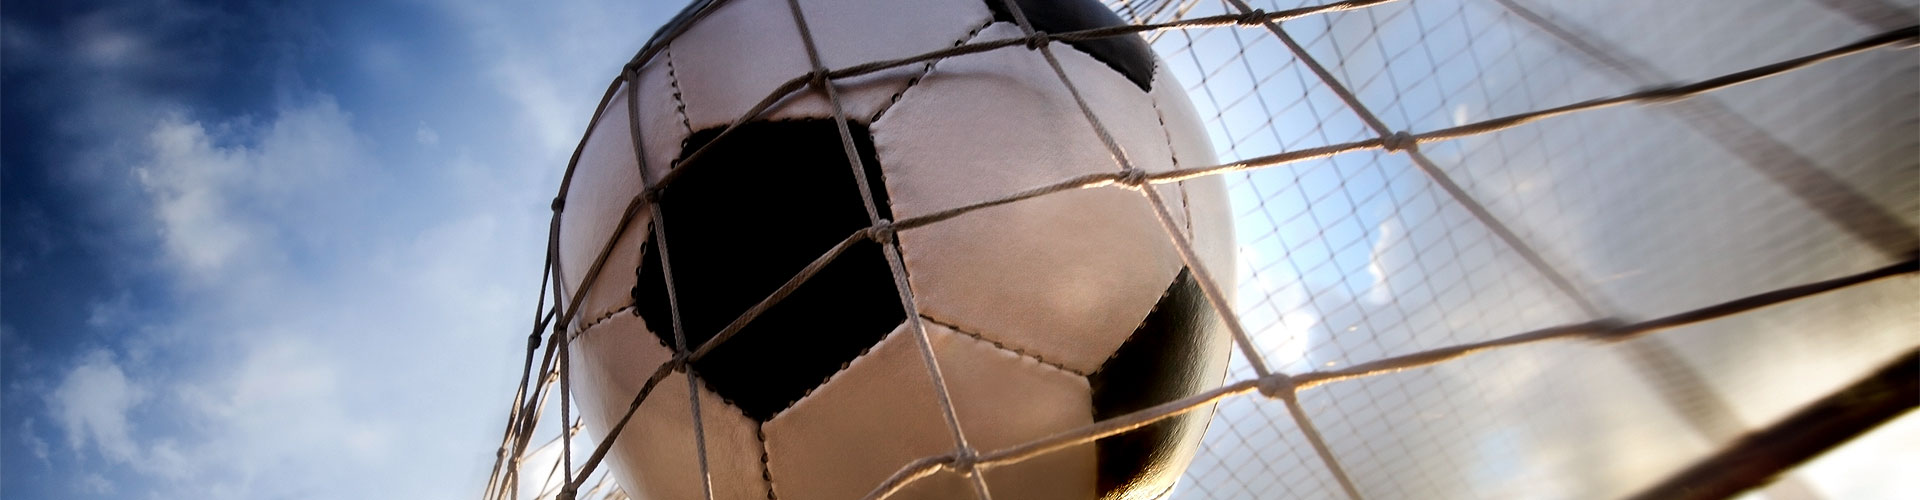 Ver la Eurocopa 2020 de fútbol en vivo en Arostegieta